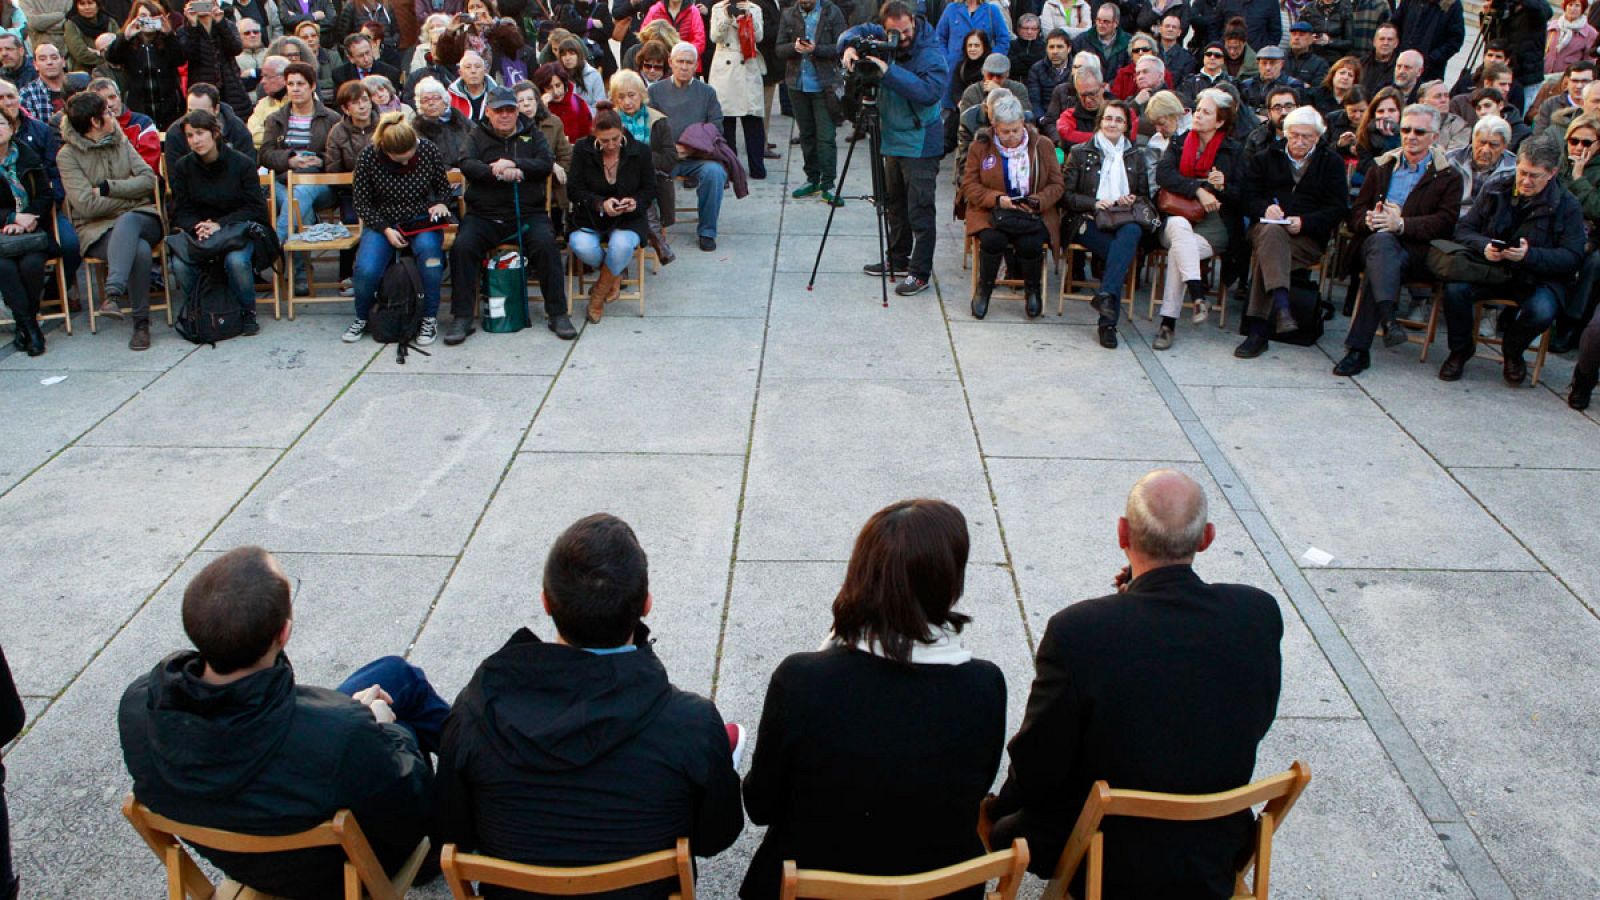 Acto de Podemos para informar de la consulta ciudadana que promueve el partido, en la Plaza Reina Sofía de Madrid.